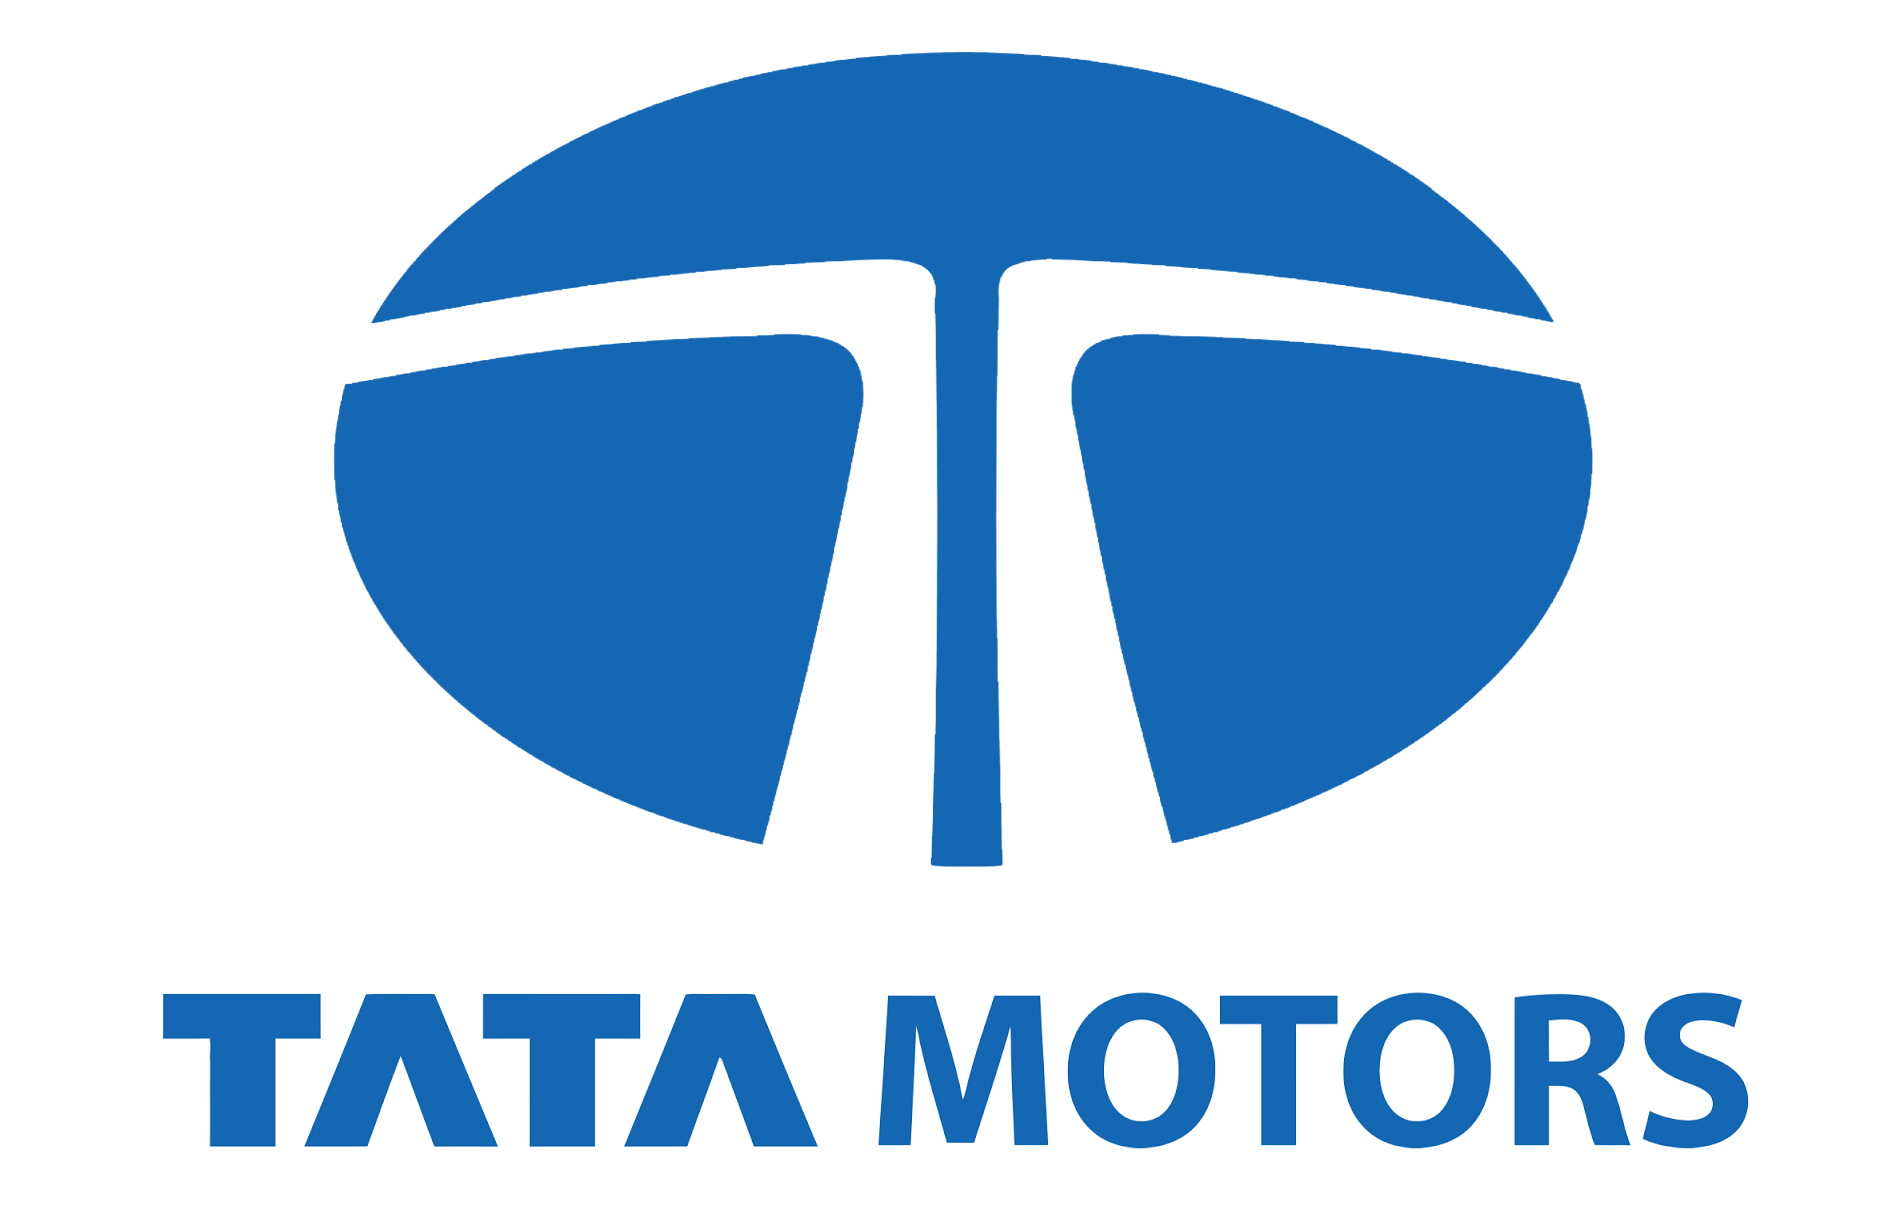 Tata Motors Cars Showroom - Lexus Motors|Show Room|Automotive